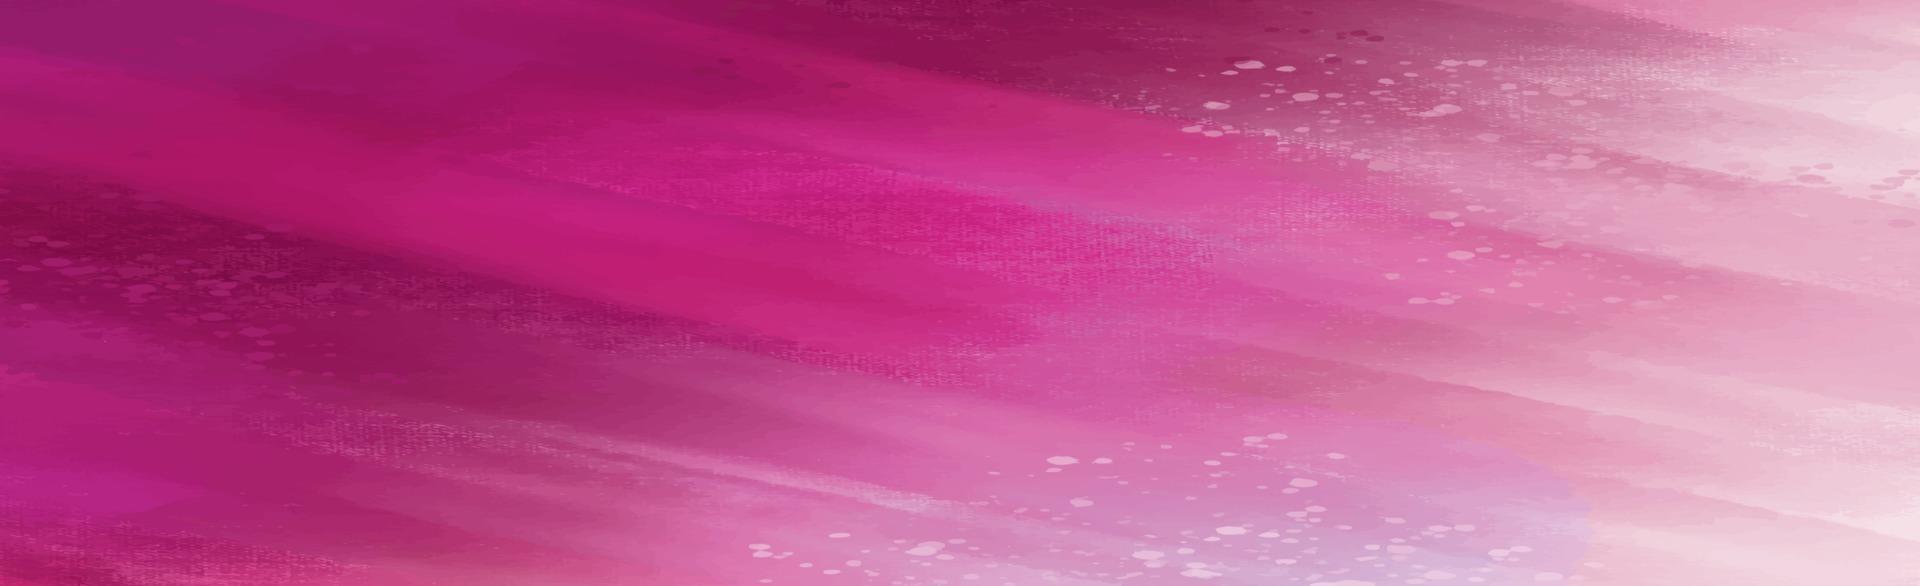 Panoramatextur des realistischen roten Aquarells auf einem weißen Hintergrund - Vektor